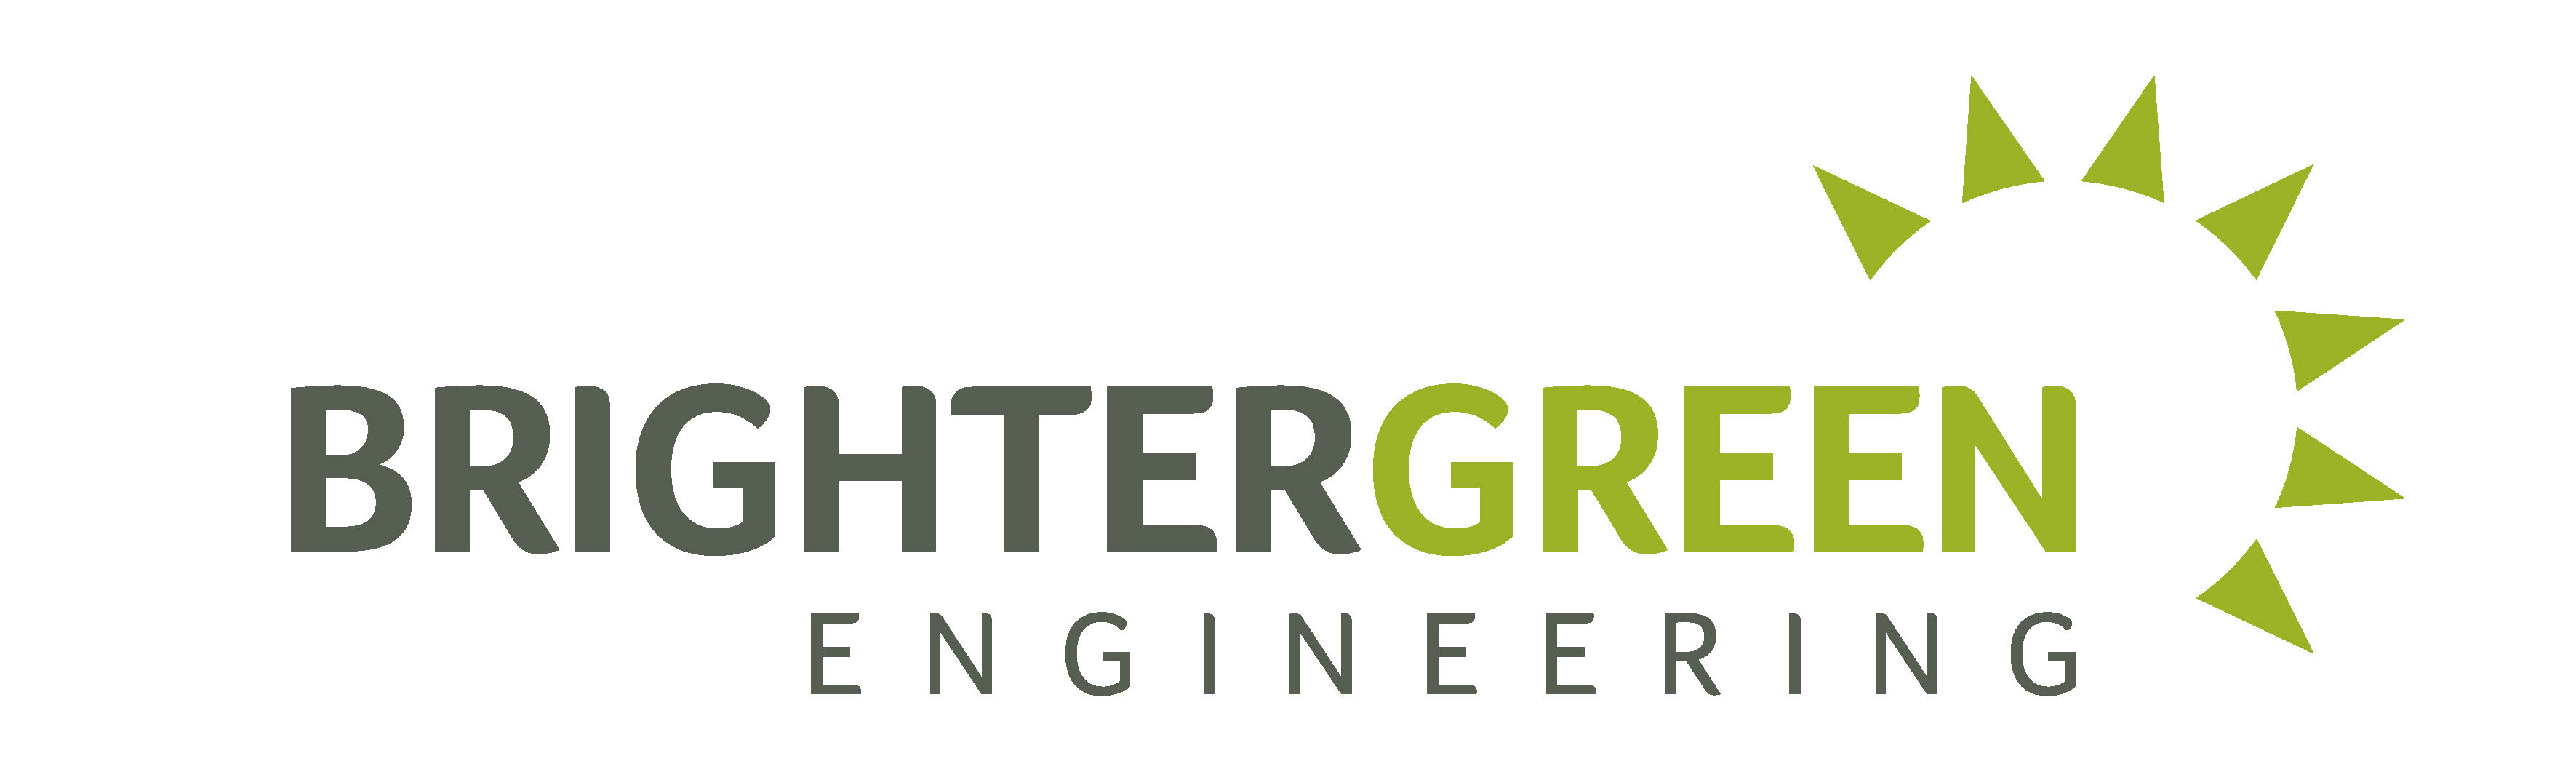 logo for Brighter Green Engineering Ltd